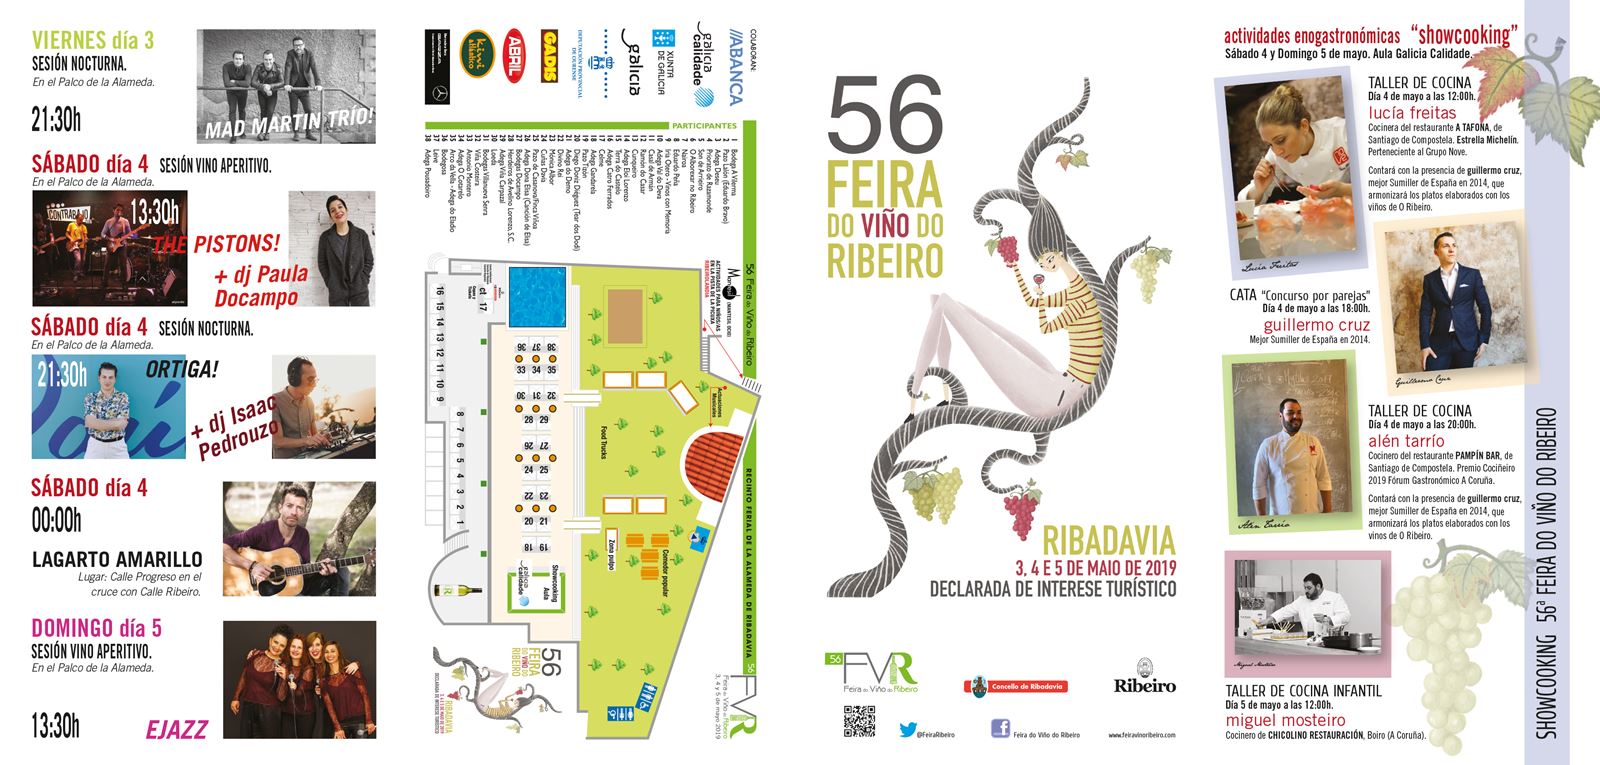 Feira do Viño do Ribeiro  3, 4 y 5 de mayo de 2019, en Ribadavia (Ourense),